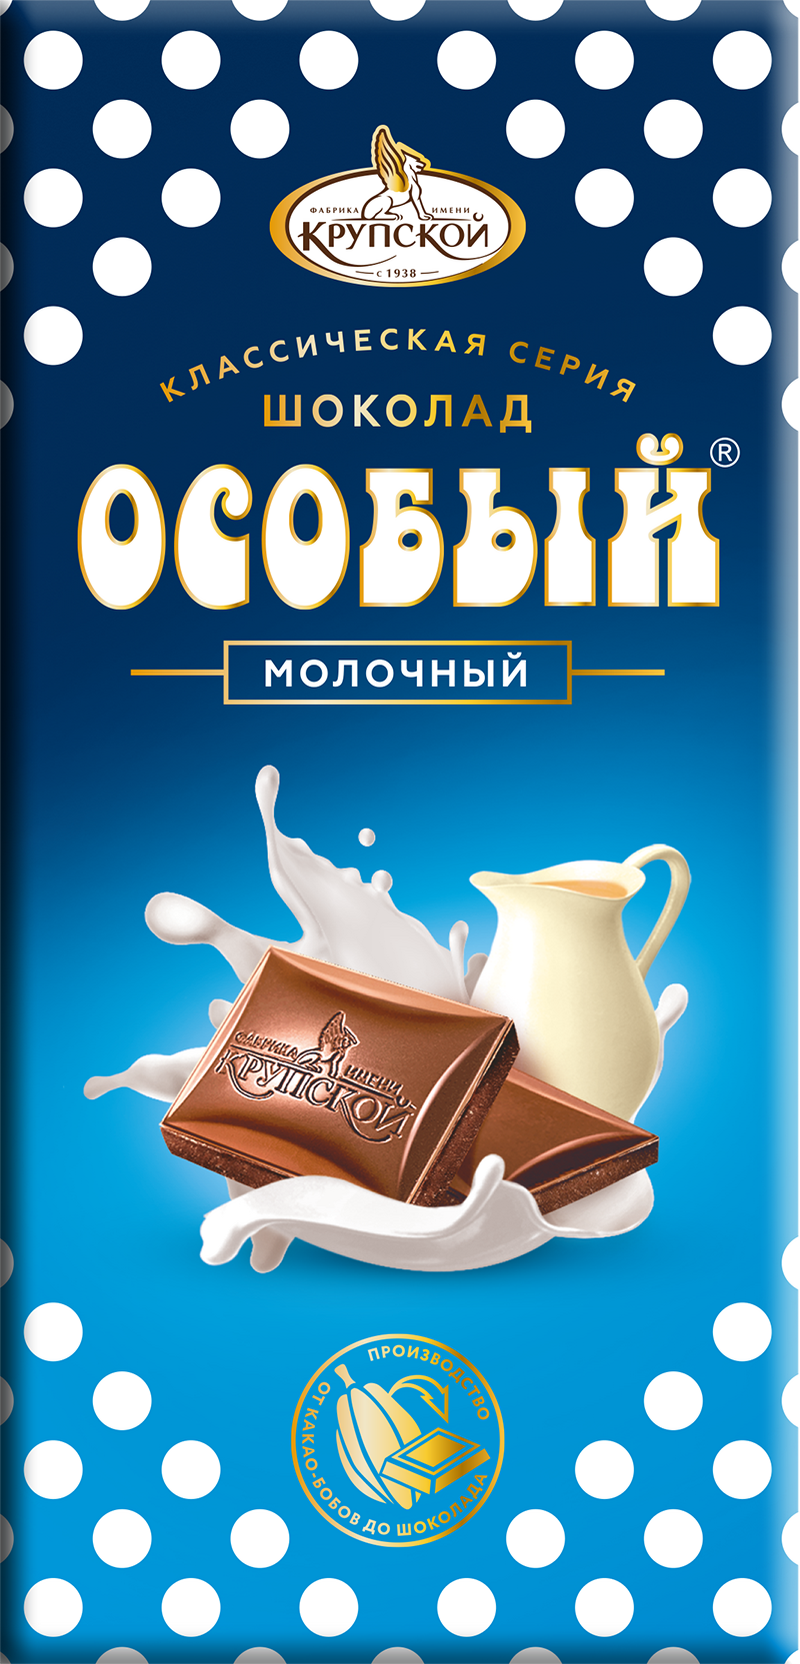 Шоколад молочный Особый 90г/КФ Крупской